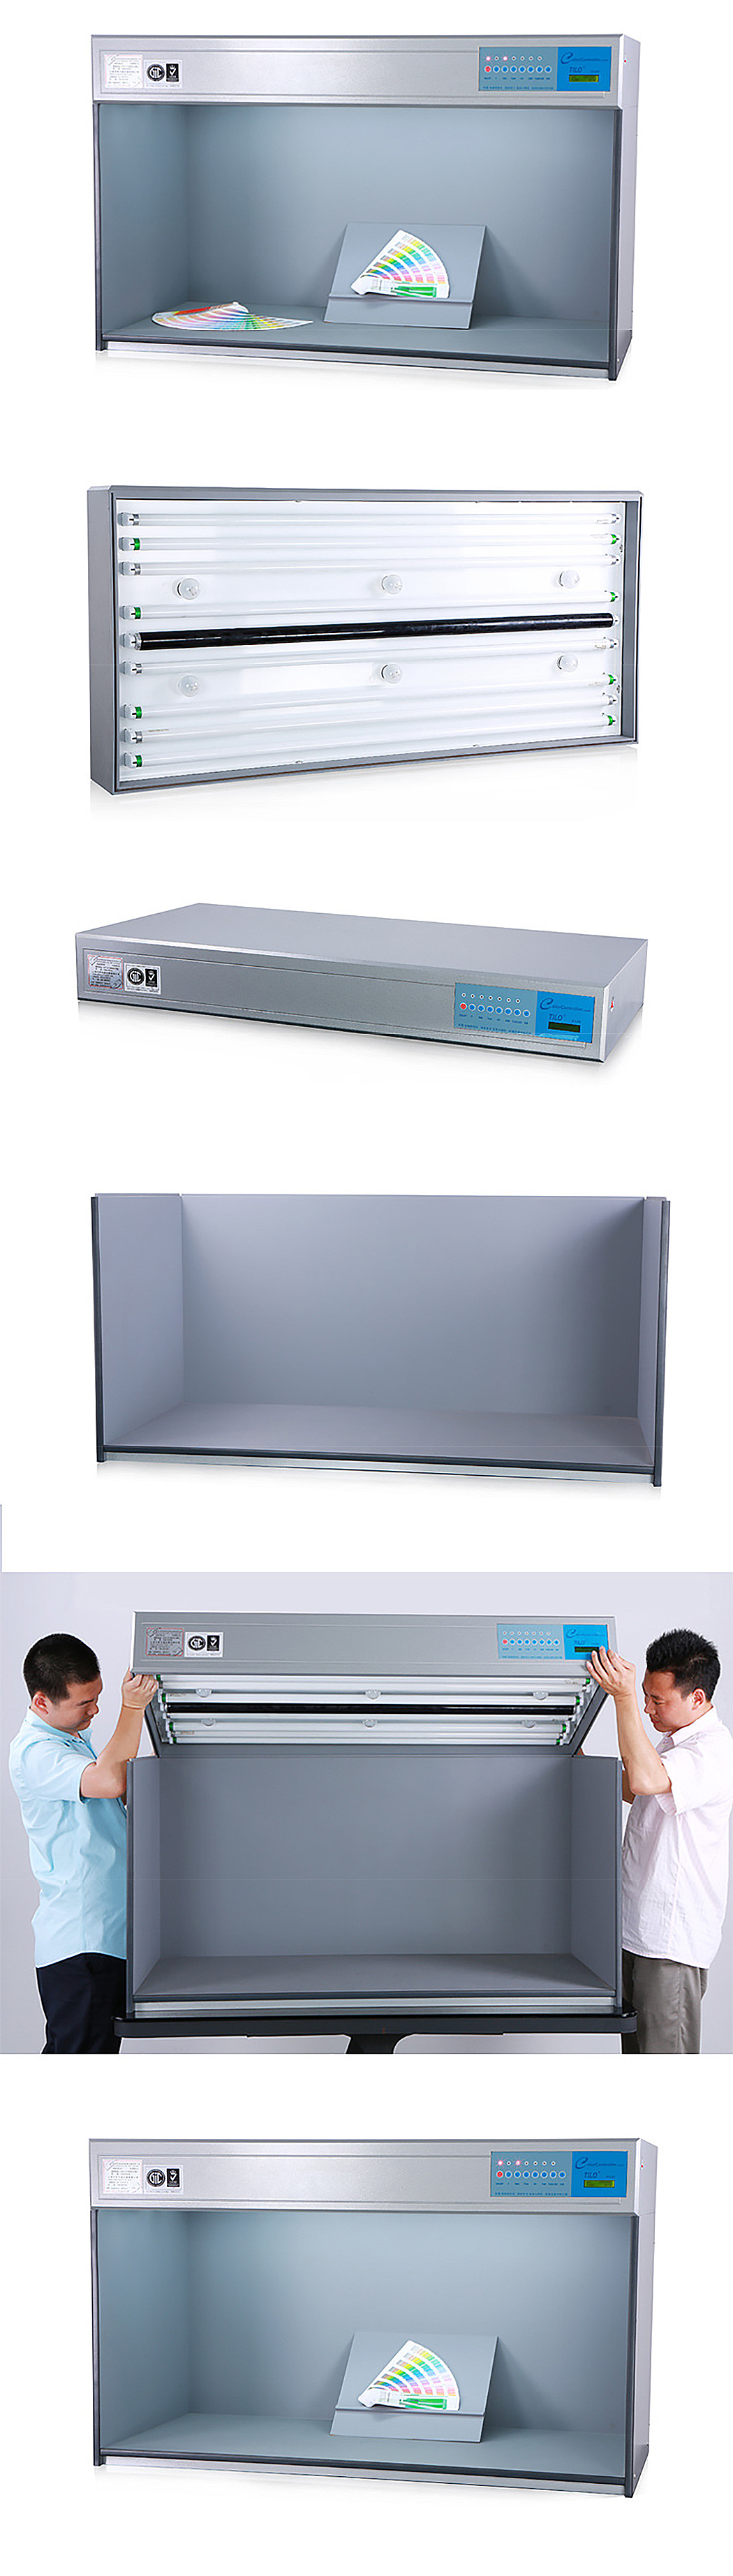 TILO Large size 120cm Color light box Color assessment cabinet with D65*2/TL84*2/U35*2/UV*1/F*4 (110V) Model P120